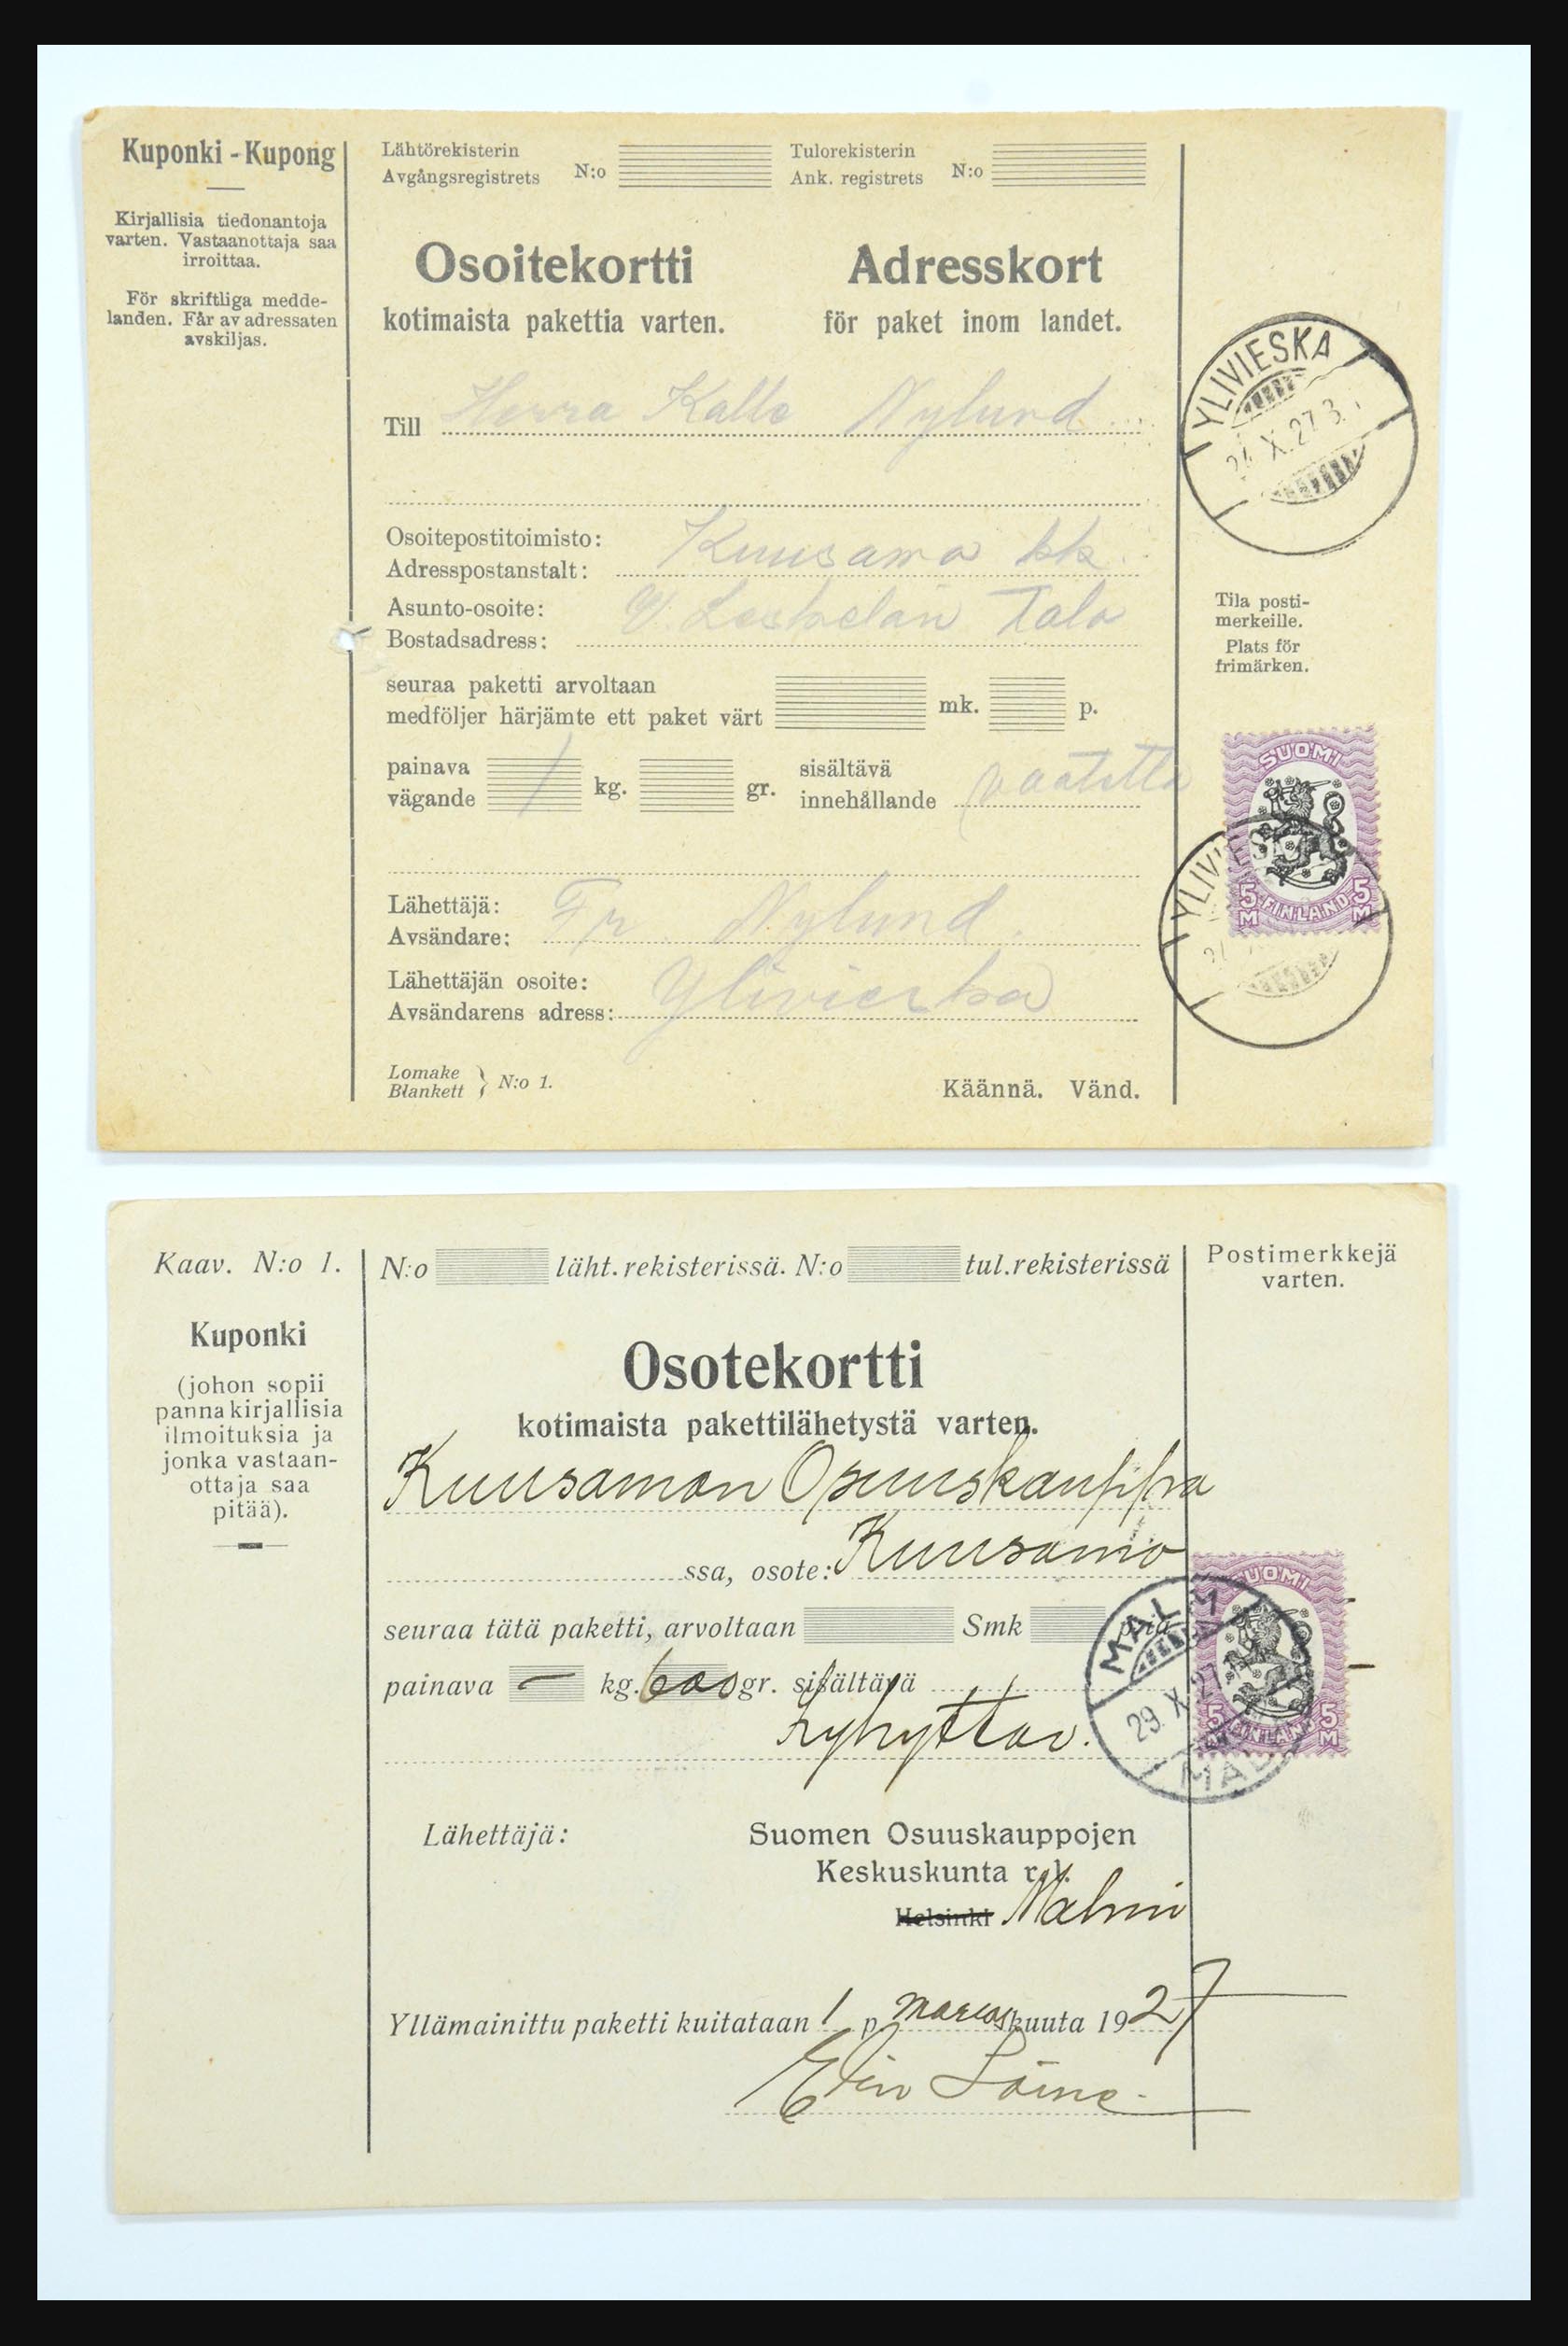 31658 054 - 31658 Finland brieven 1833-1960.